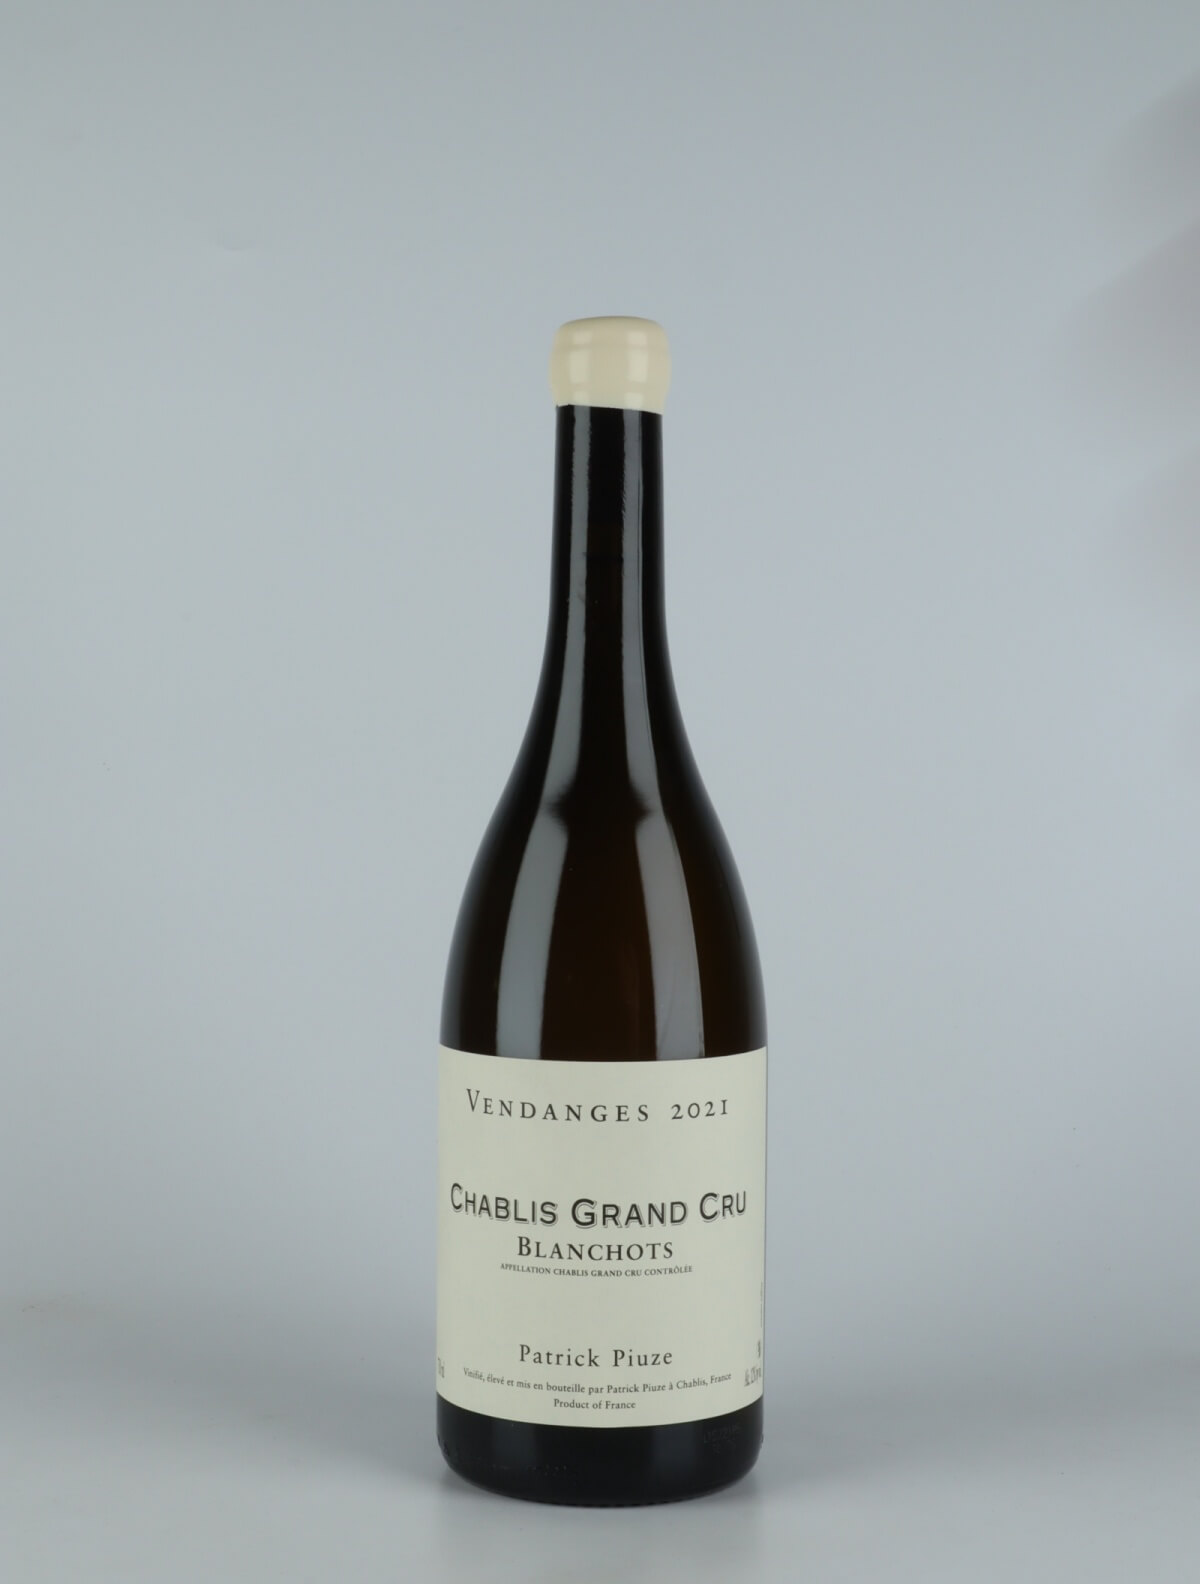 En flaske 2021 Chablis Grand Cru - Blanchots Hvidvin fra Patrick Piuze, Bourgogne i Frankrig